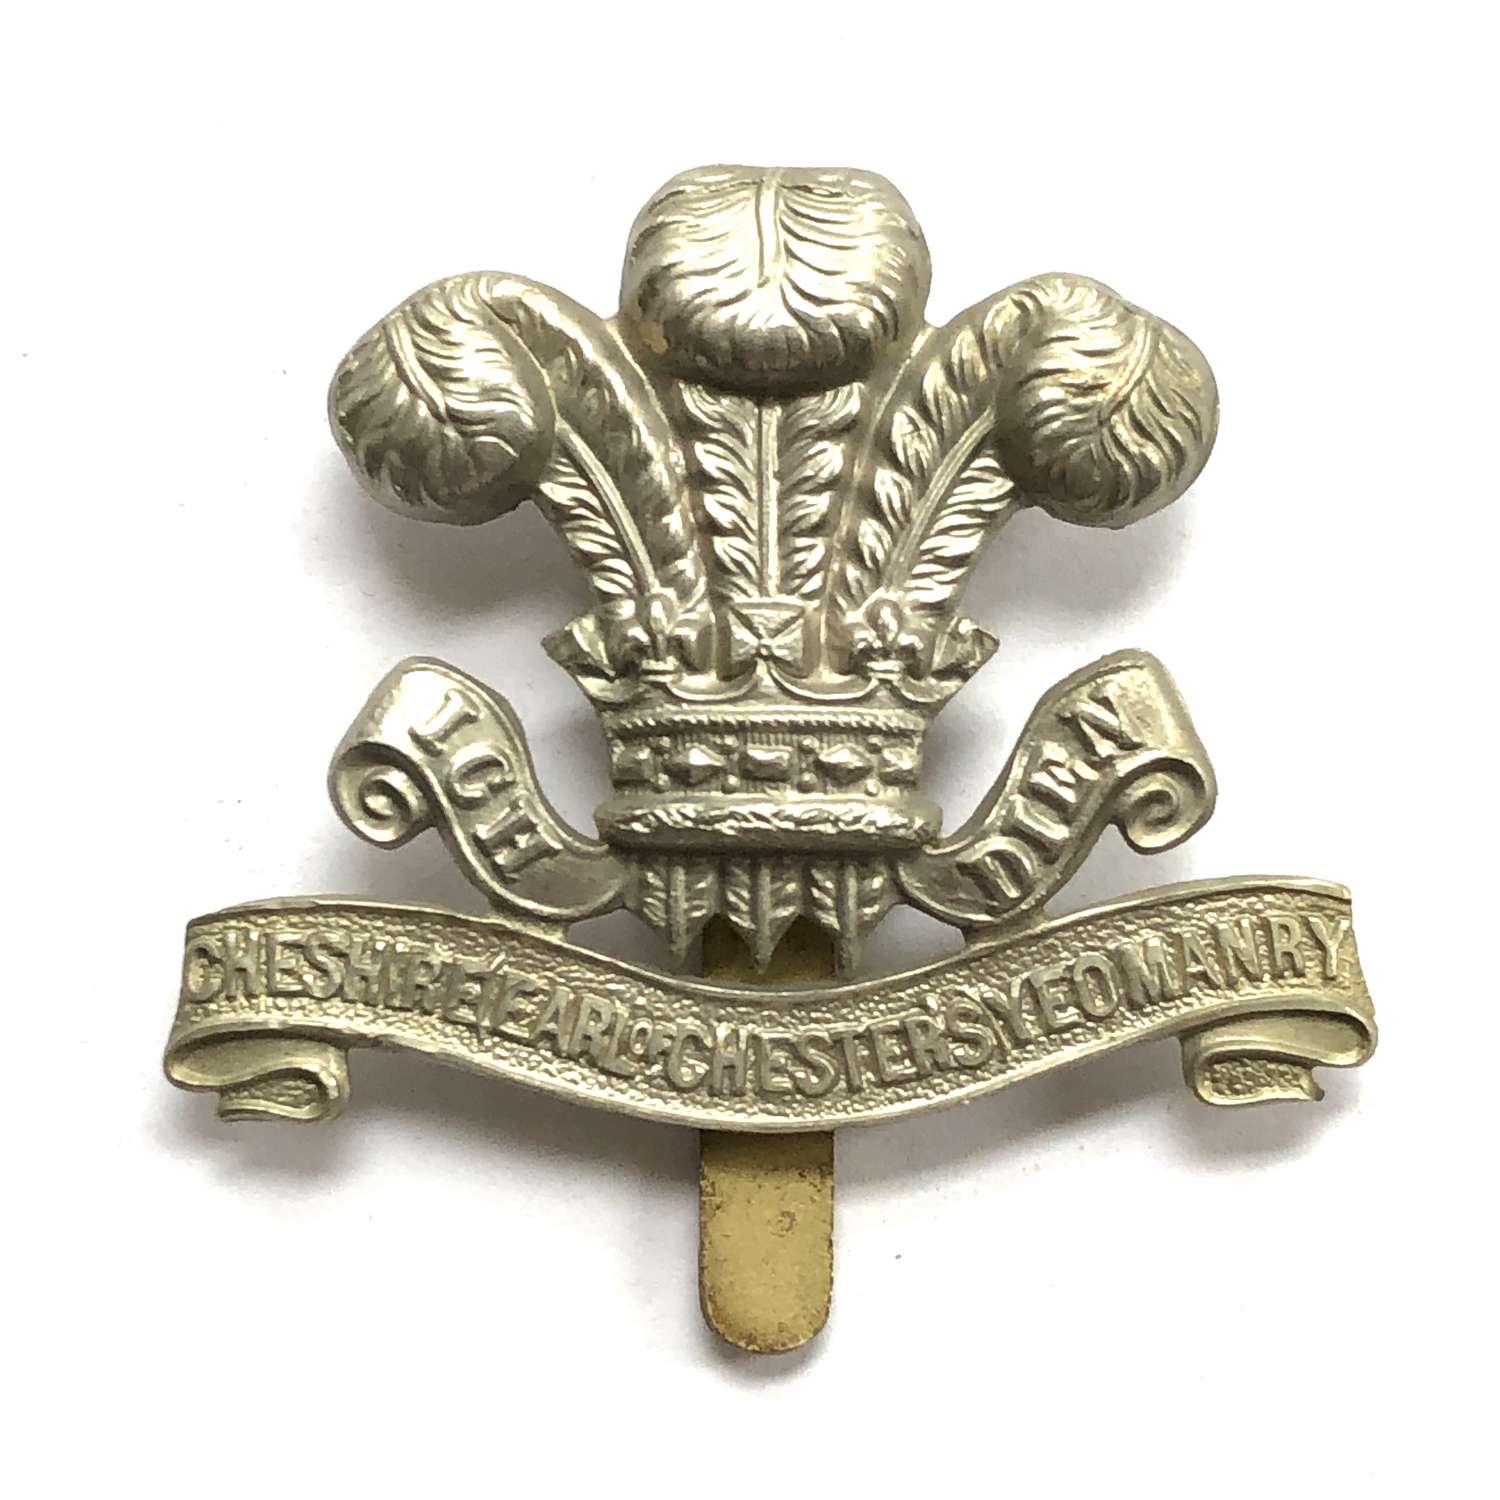 Cheshire Yeomanry white metal cap badge